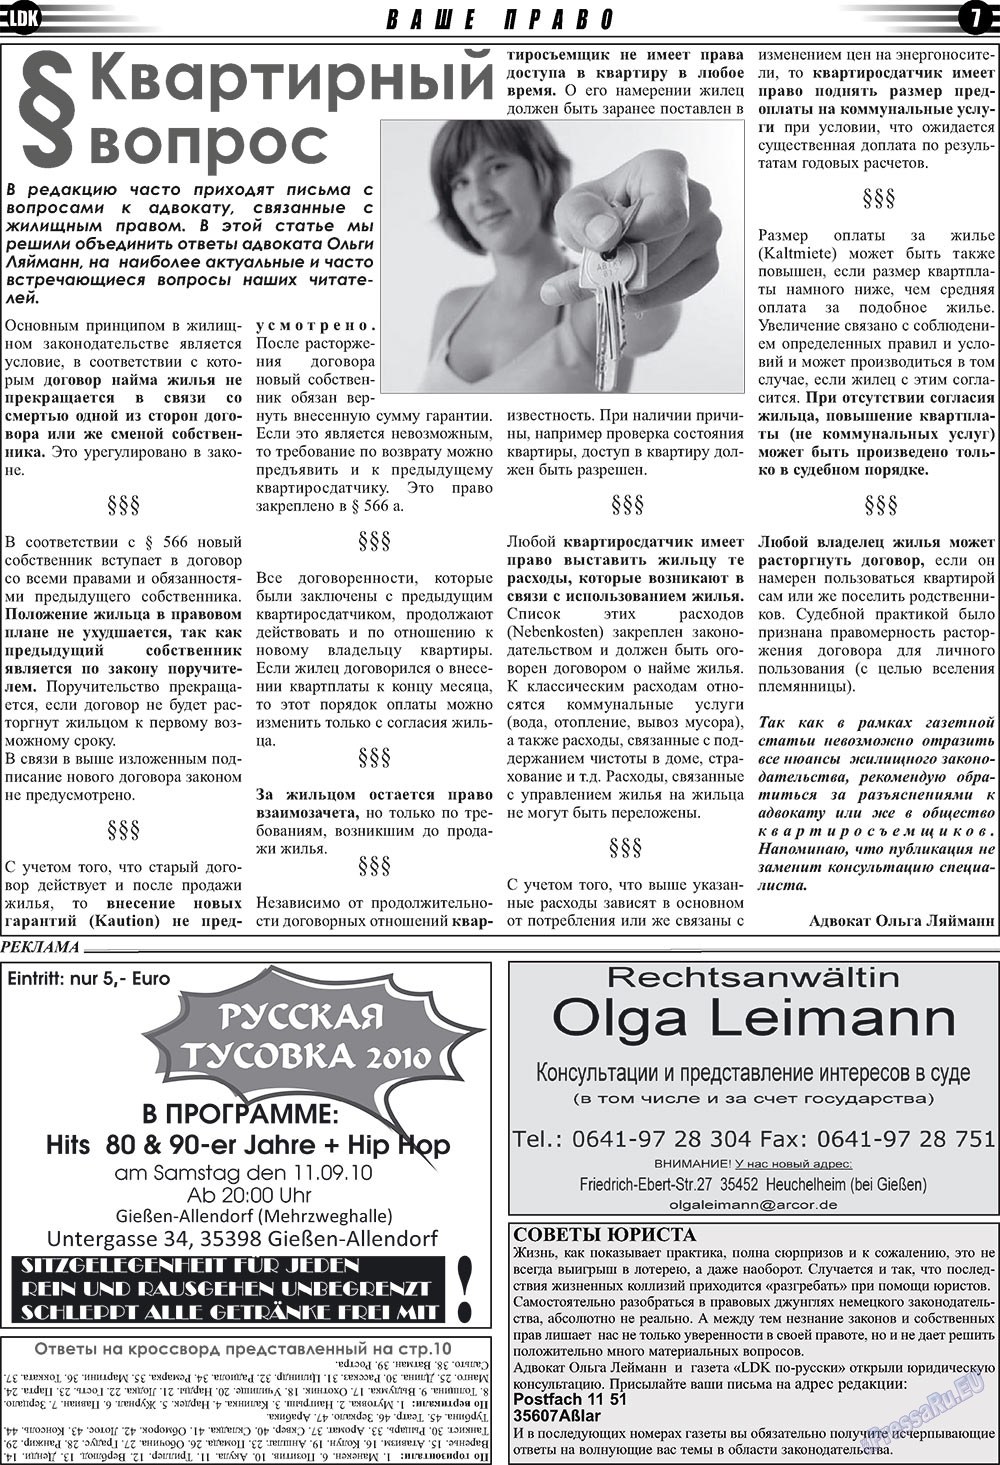 LDK по-русски (газета). 2010 год, номер 9, стр. 7